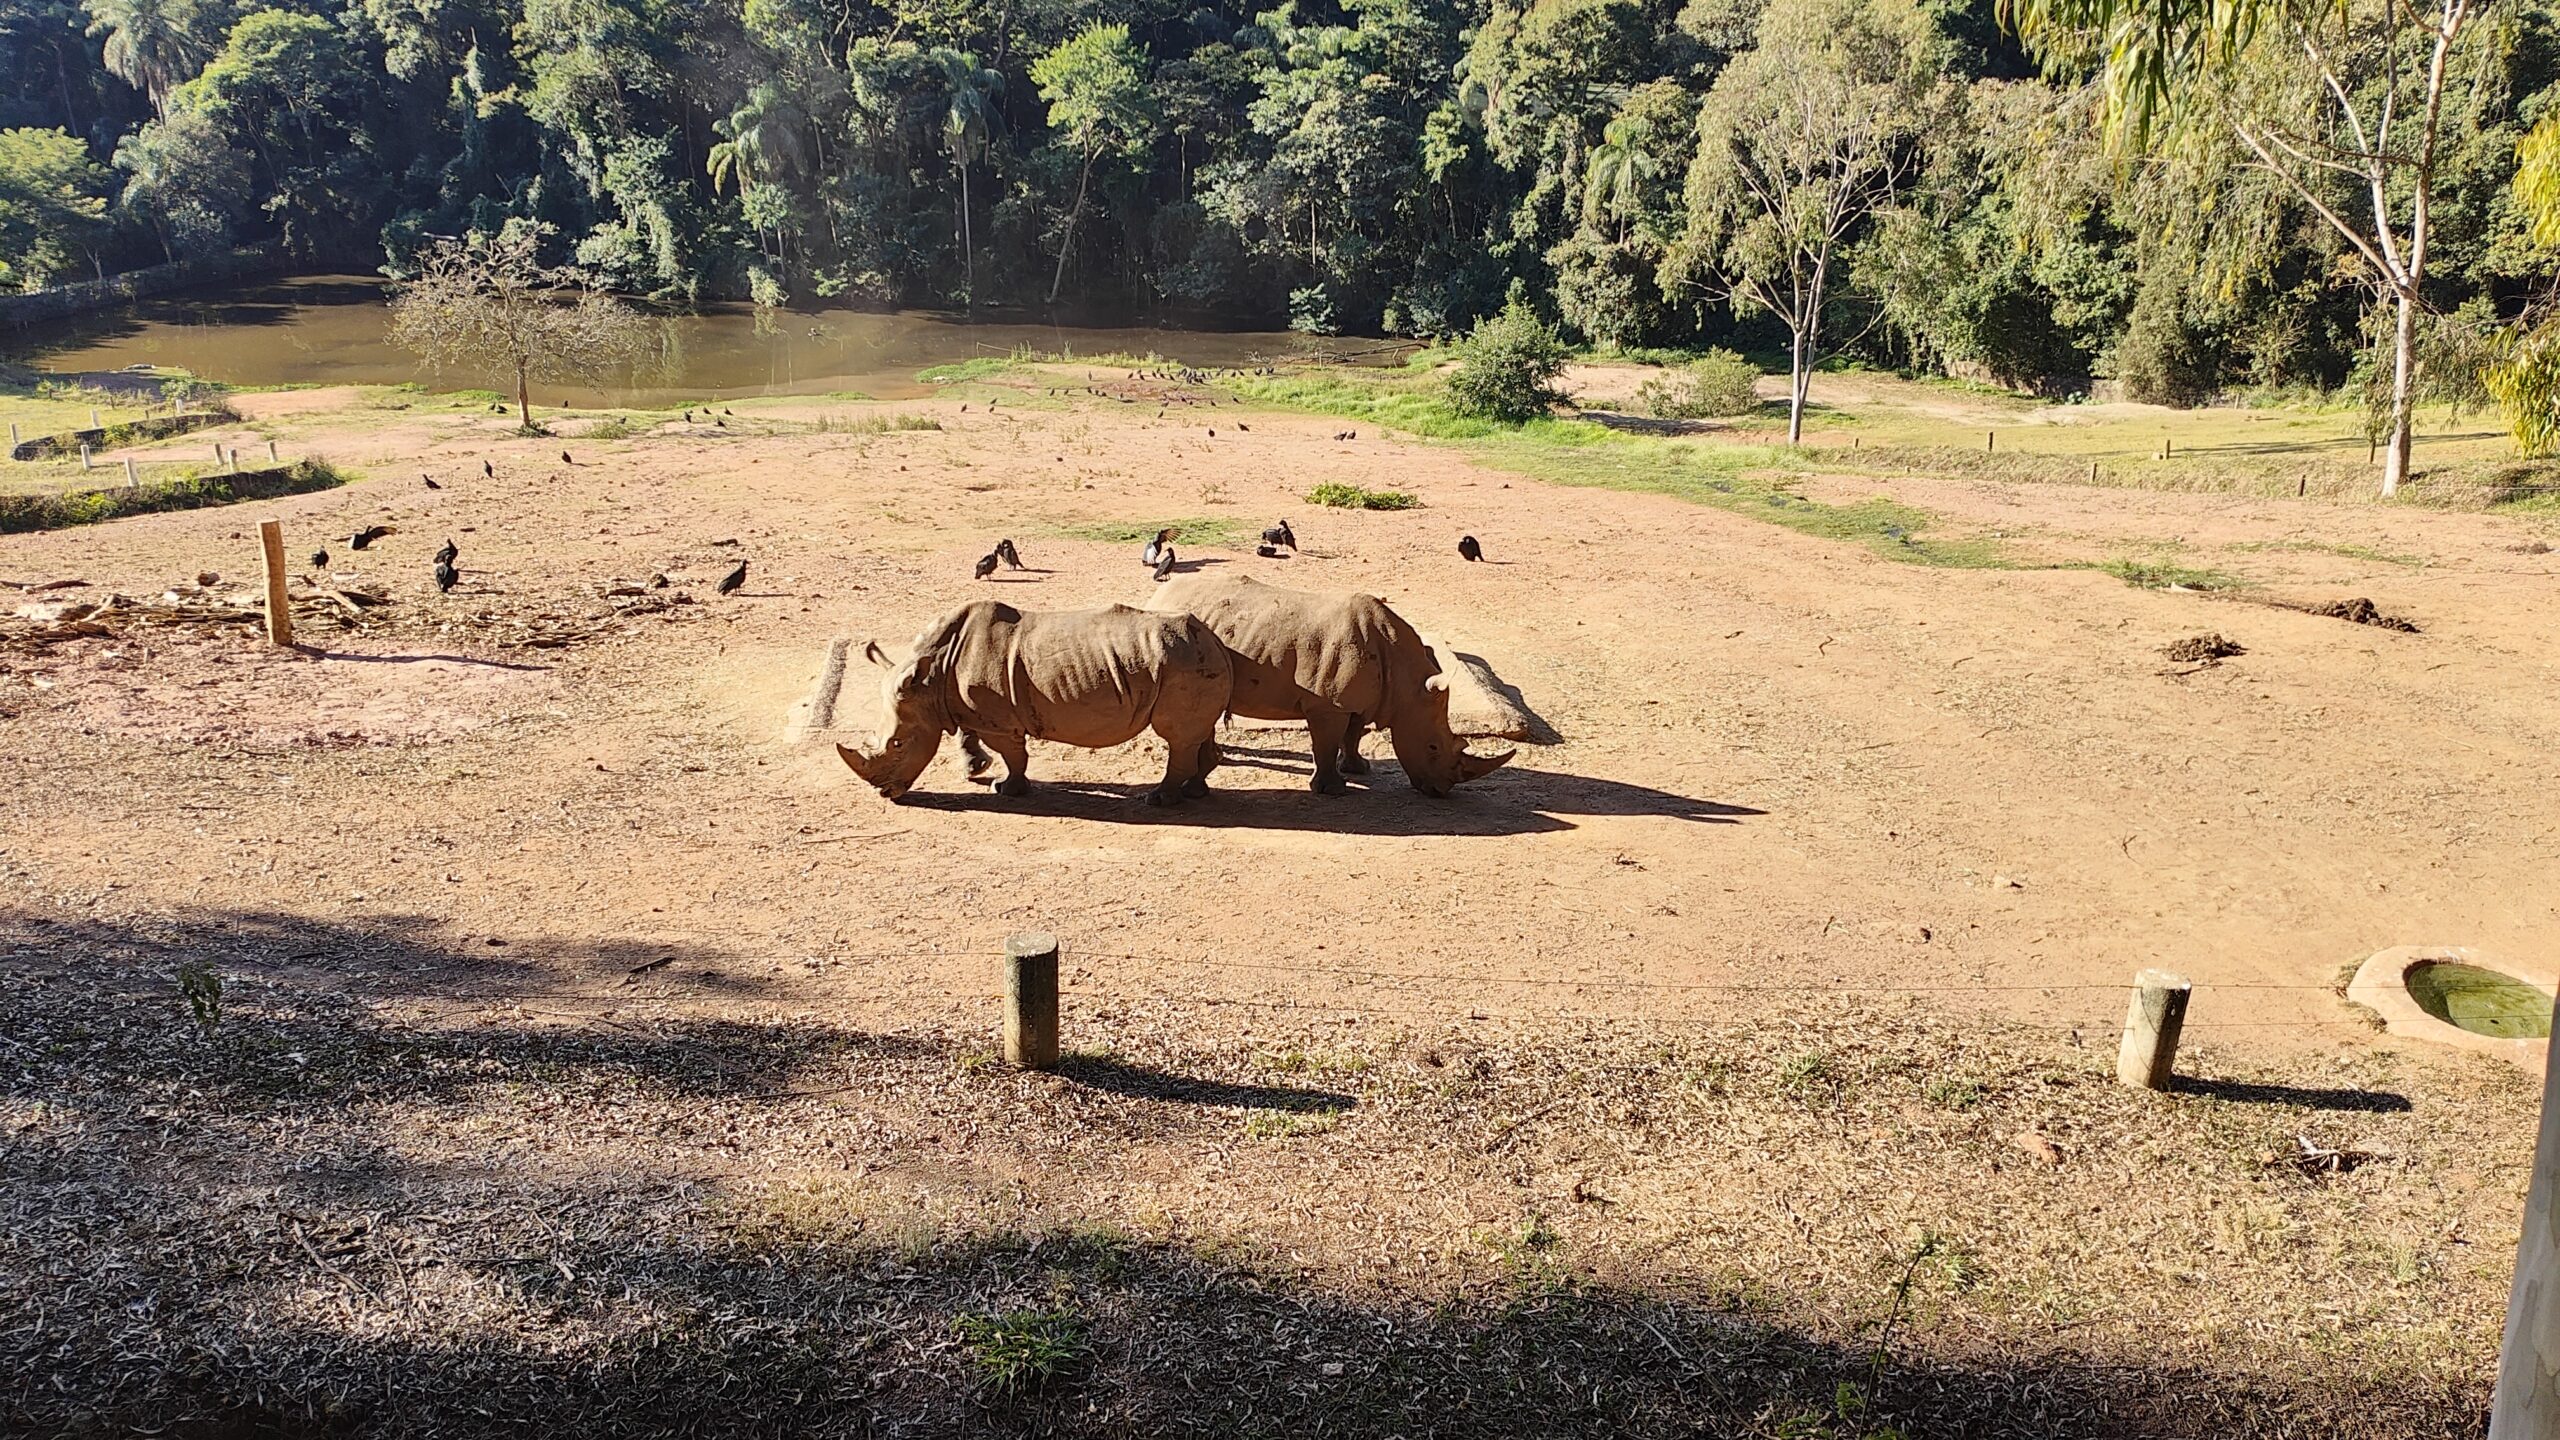 Foto de dois rinocerontes tirada com a câmera ultrawide do Motorola Razr 40 Ultra